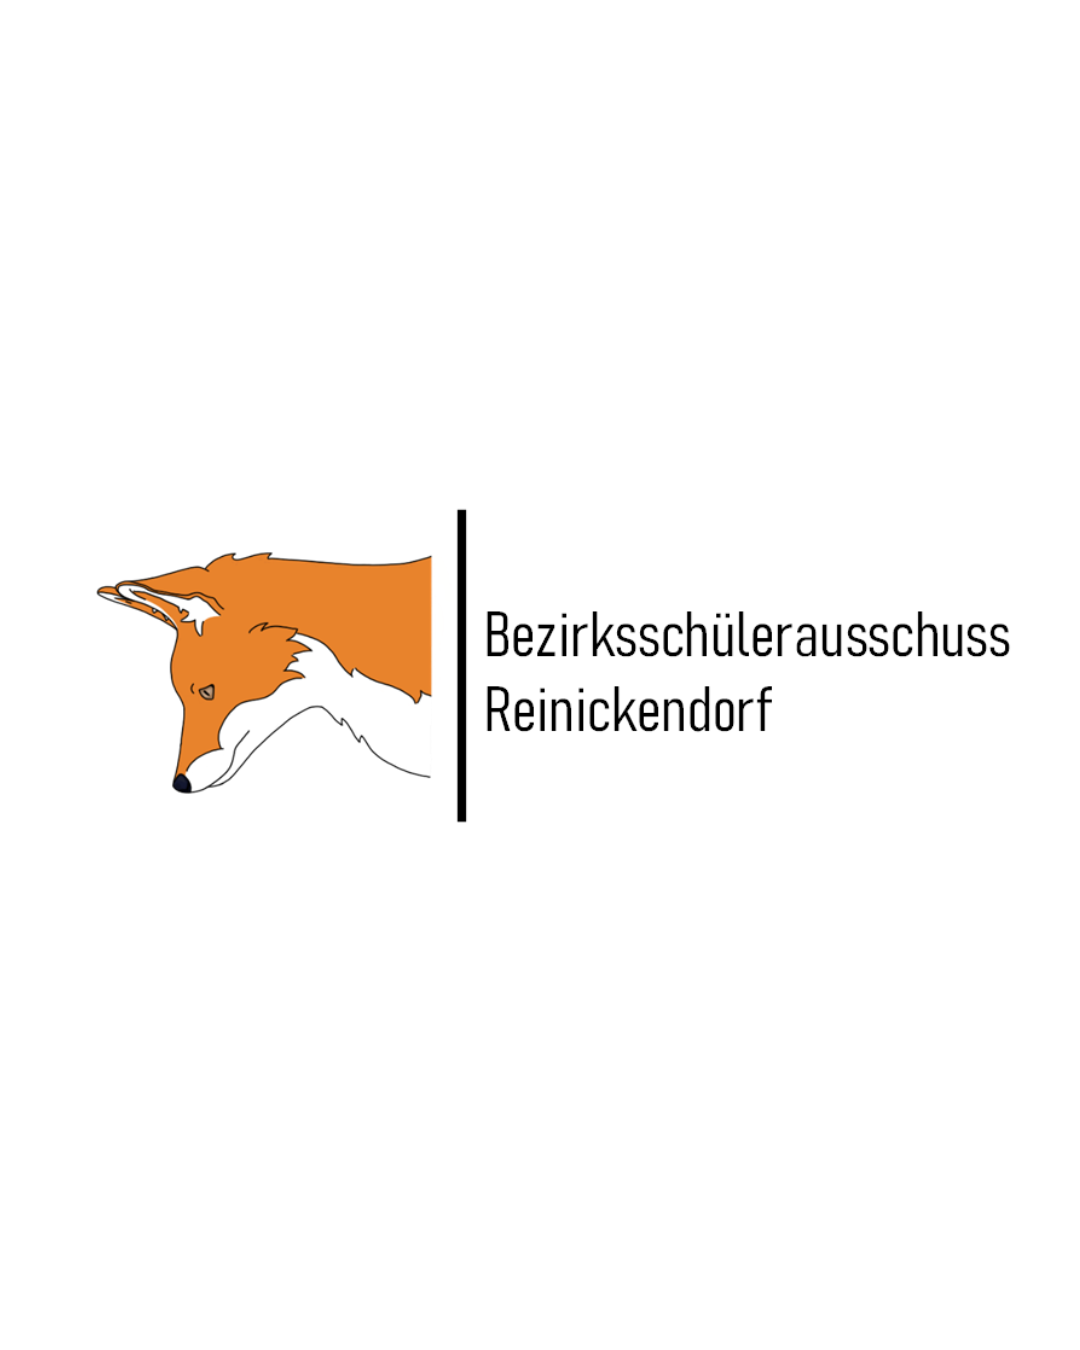 Bezirksschülerausschuss Reinickendorf